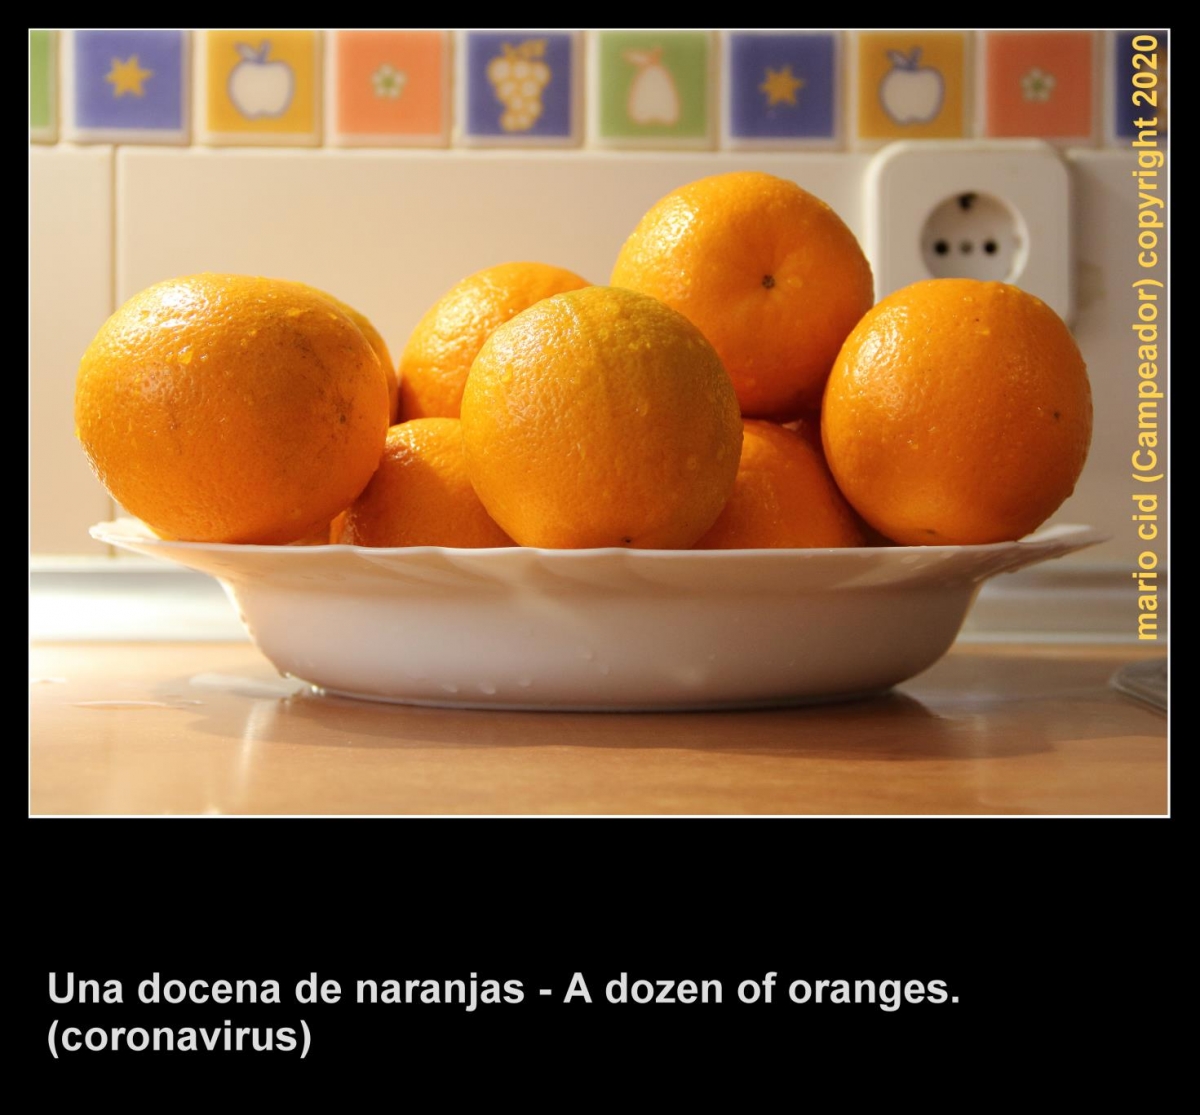 Una docena de naranjas / A dozen of oranges (coronavirus 20/abril/2020). Photo by Campeador.